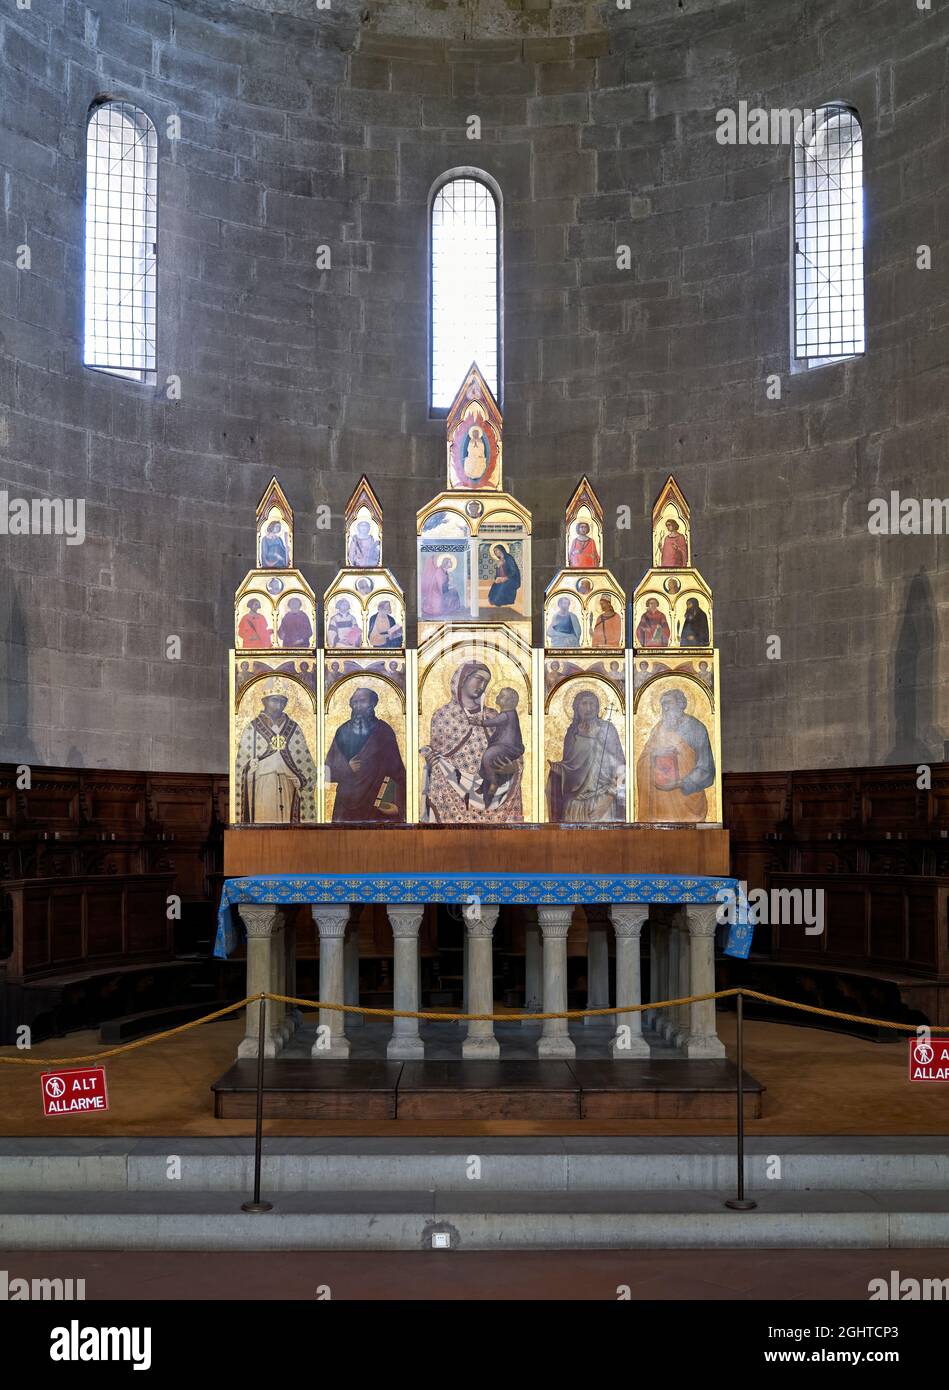 Arezzo Tuscany Italy. The altar of Santa Maria della Pieve church Stock Photo